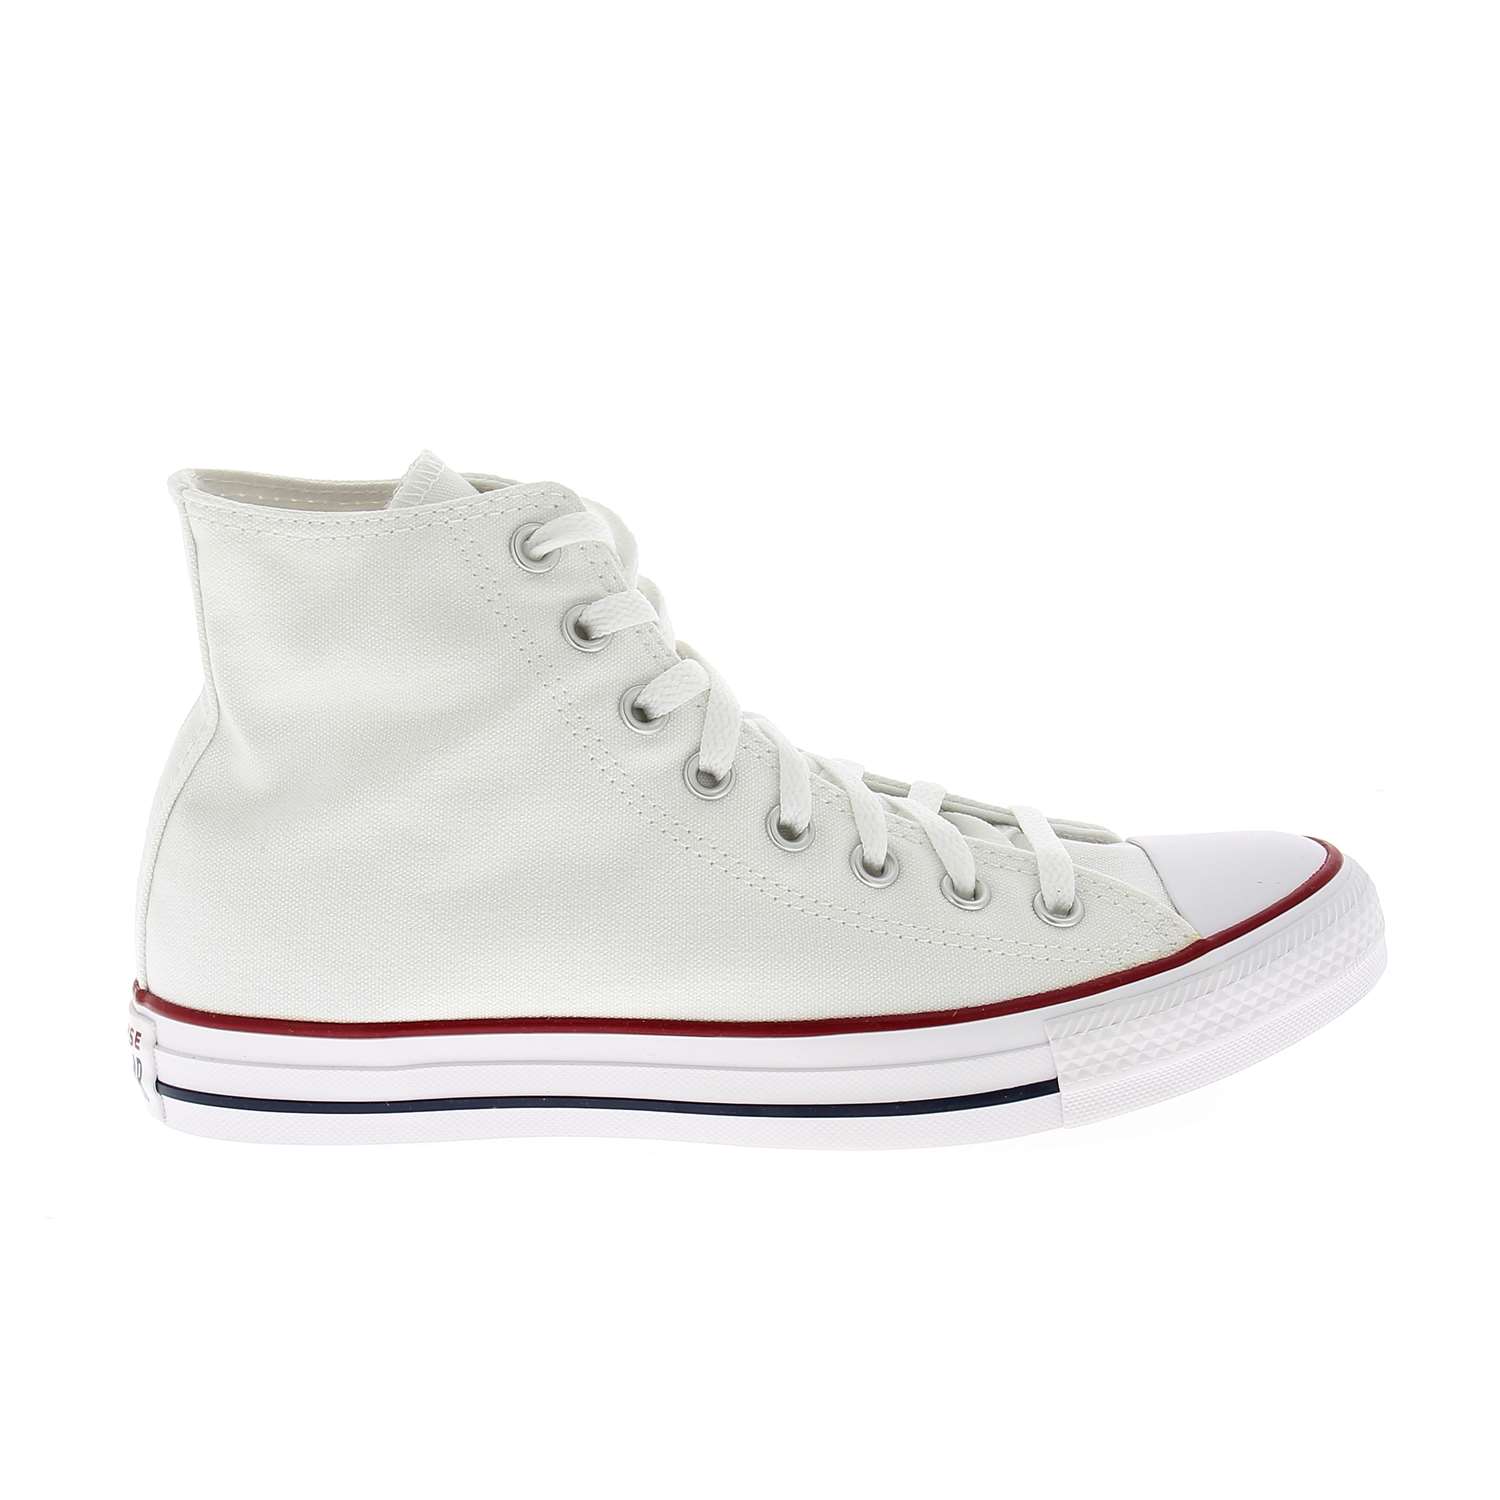 02 - ALL STAR HI H - CONVERSE - Chaussures à lacets - Textile